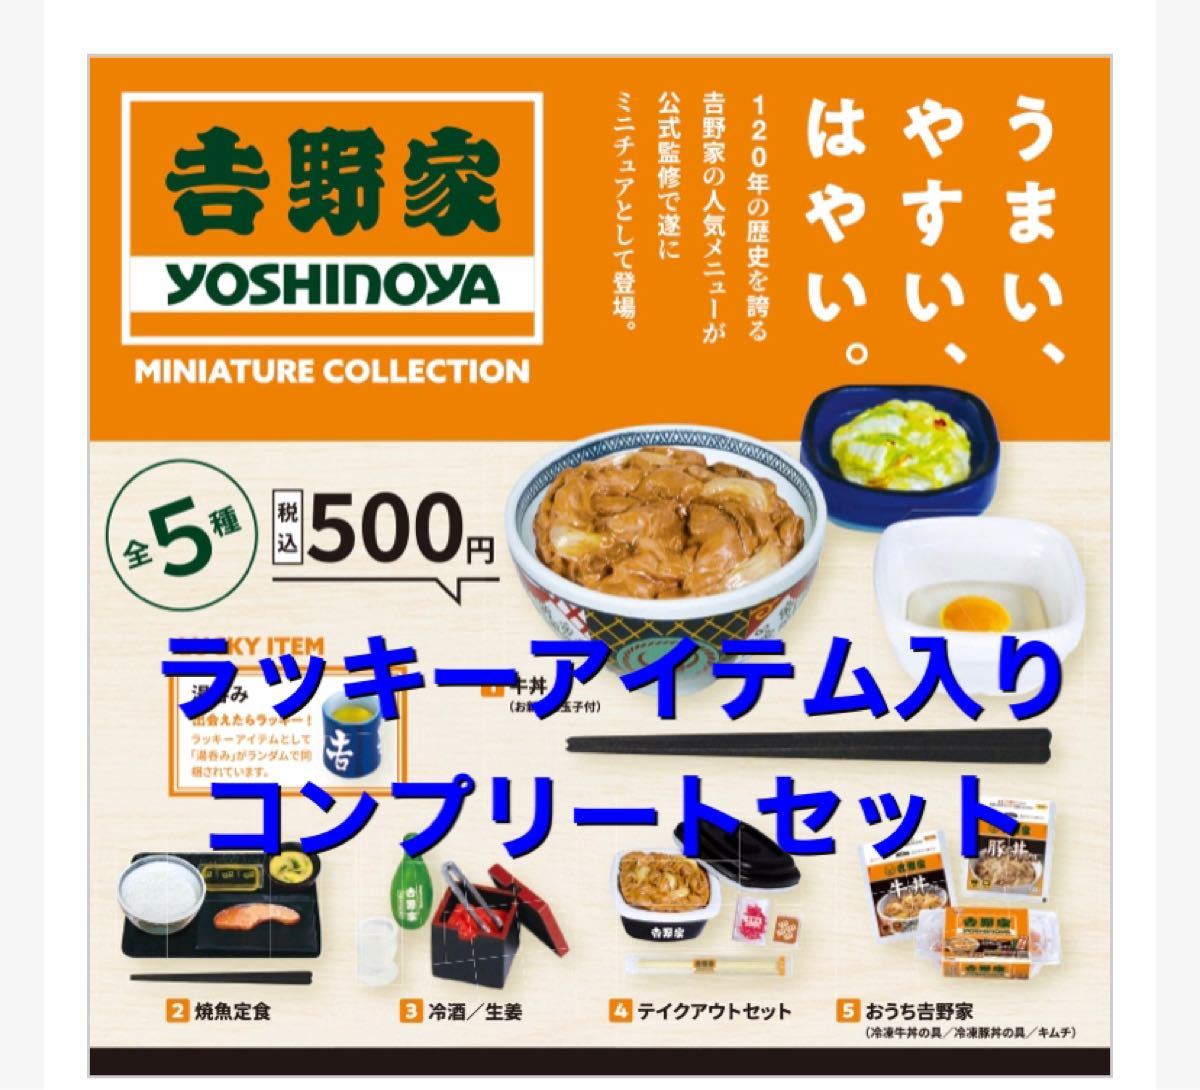 1169円 高級品 吉野家 ミニチュアコレクション 全5種セット ガチャガチャ